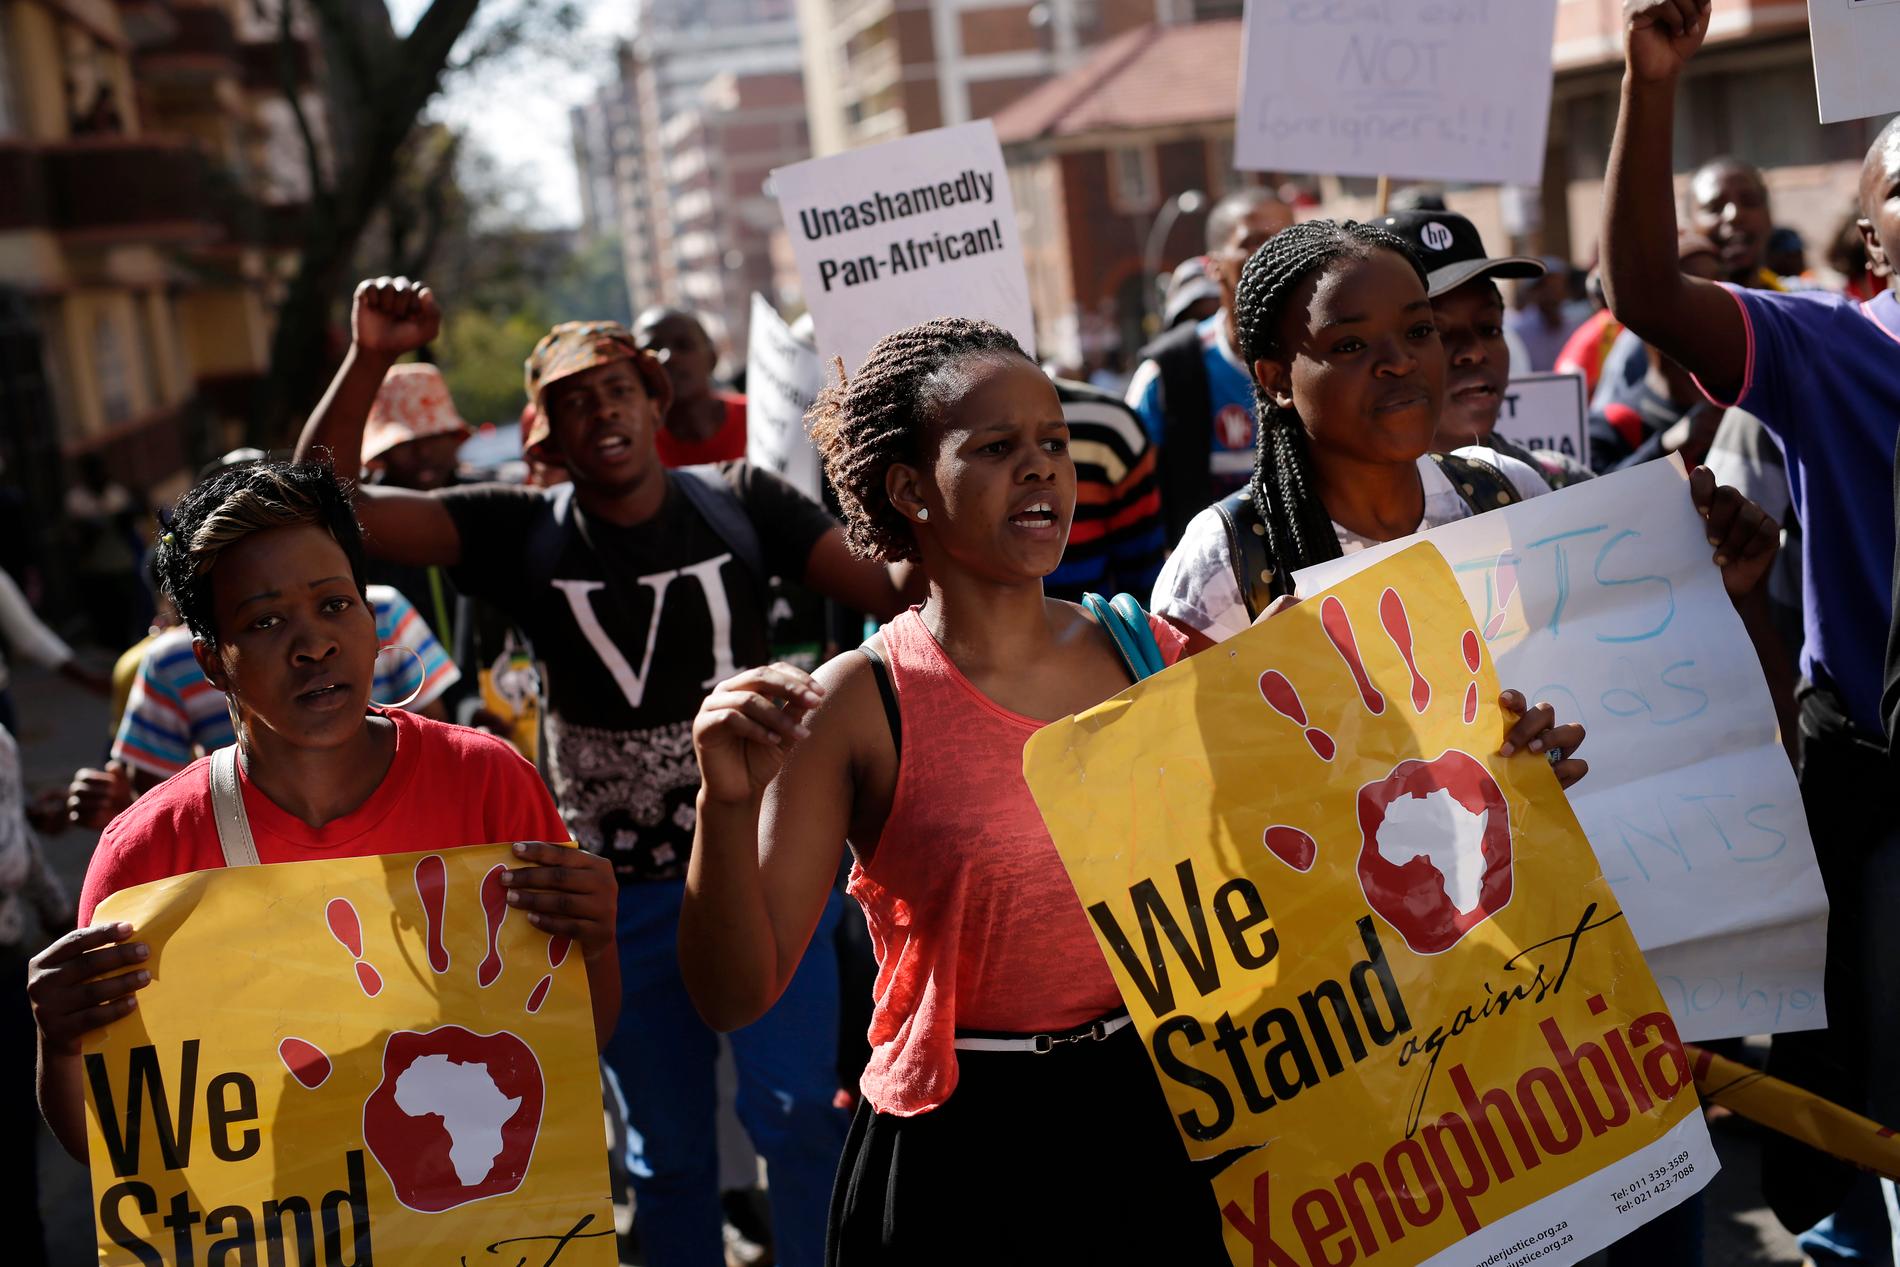 Människor deltar i en protestmarsch mot xenofobiska attacker i Johannesburg 2015, efter en våldsvåg mot utländska medborgare i landet. Arkivbild.